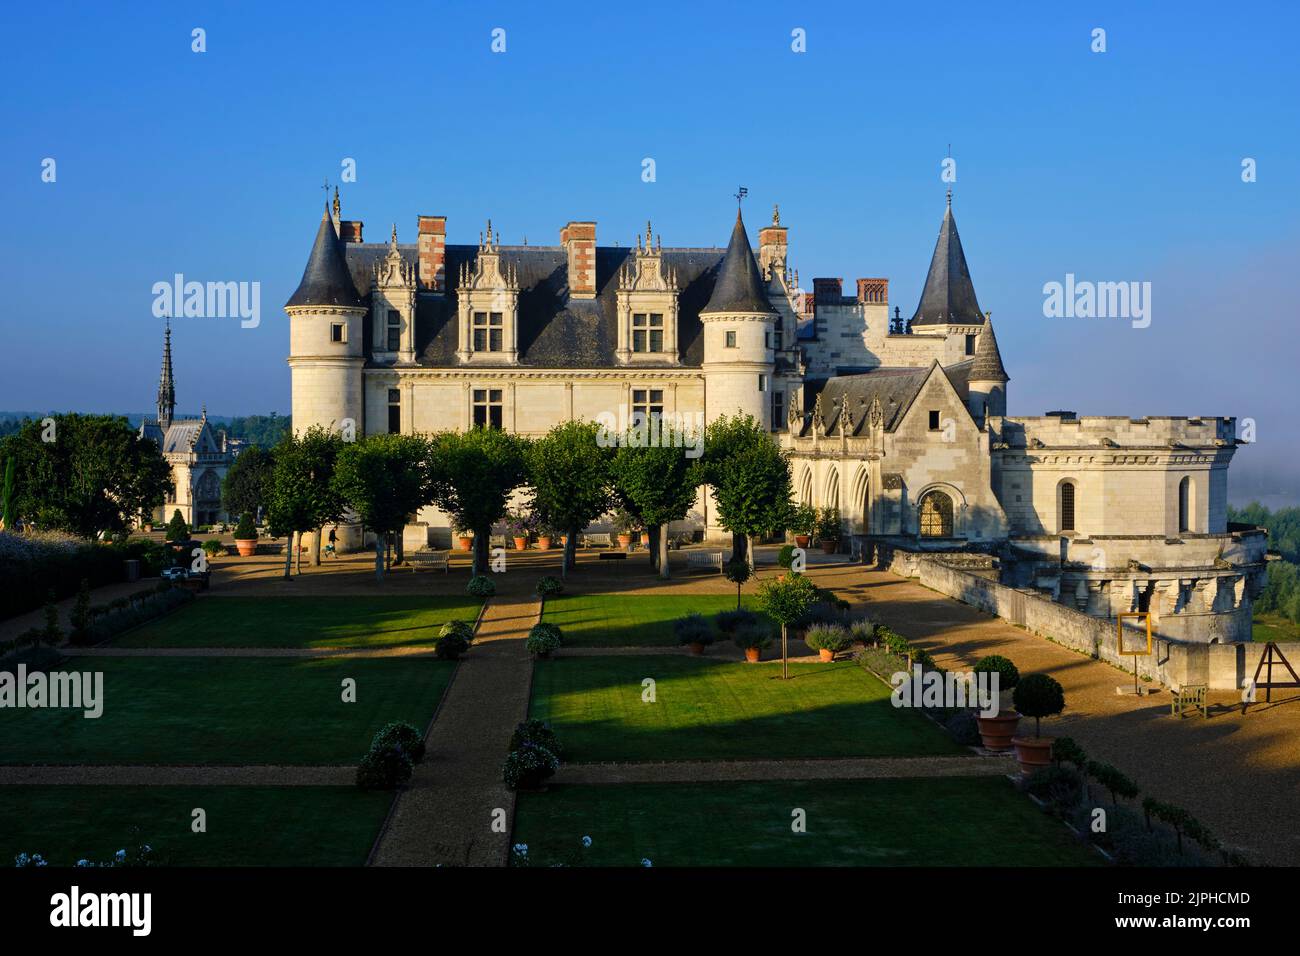 France, Indre-et-Loire (37), Amboise, Vallée de la Loire classée au patrimoine mondial de l'UNESCO, Châteaux de la Vallée de la Loire, château royal d'Amboise avec ses gadens Banque D'Images